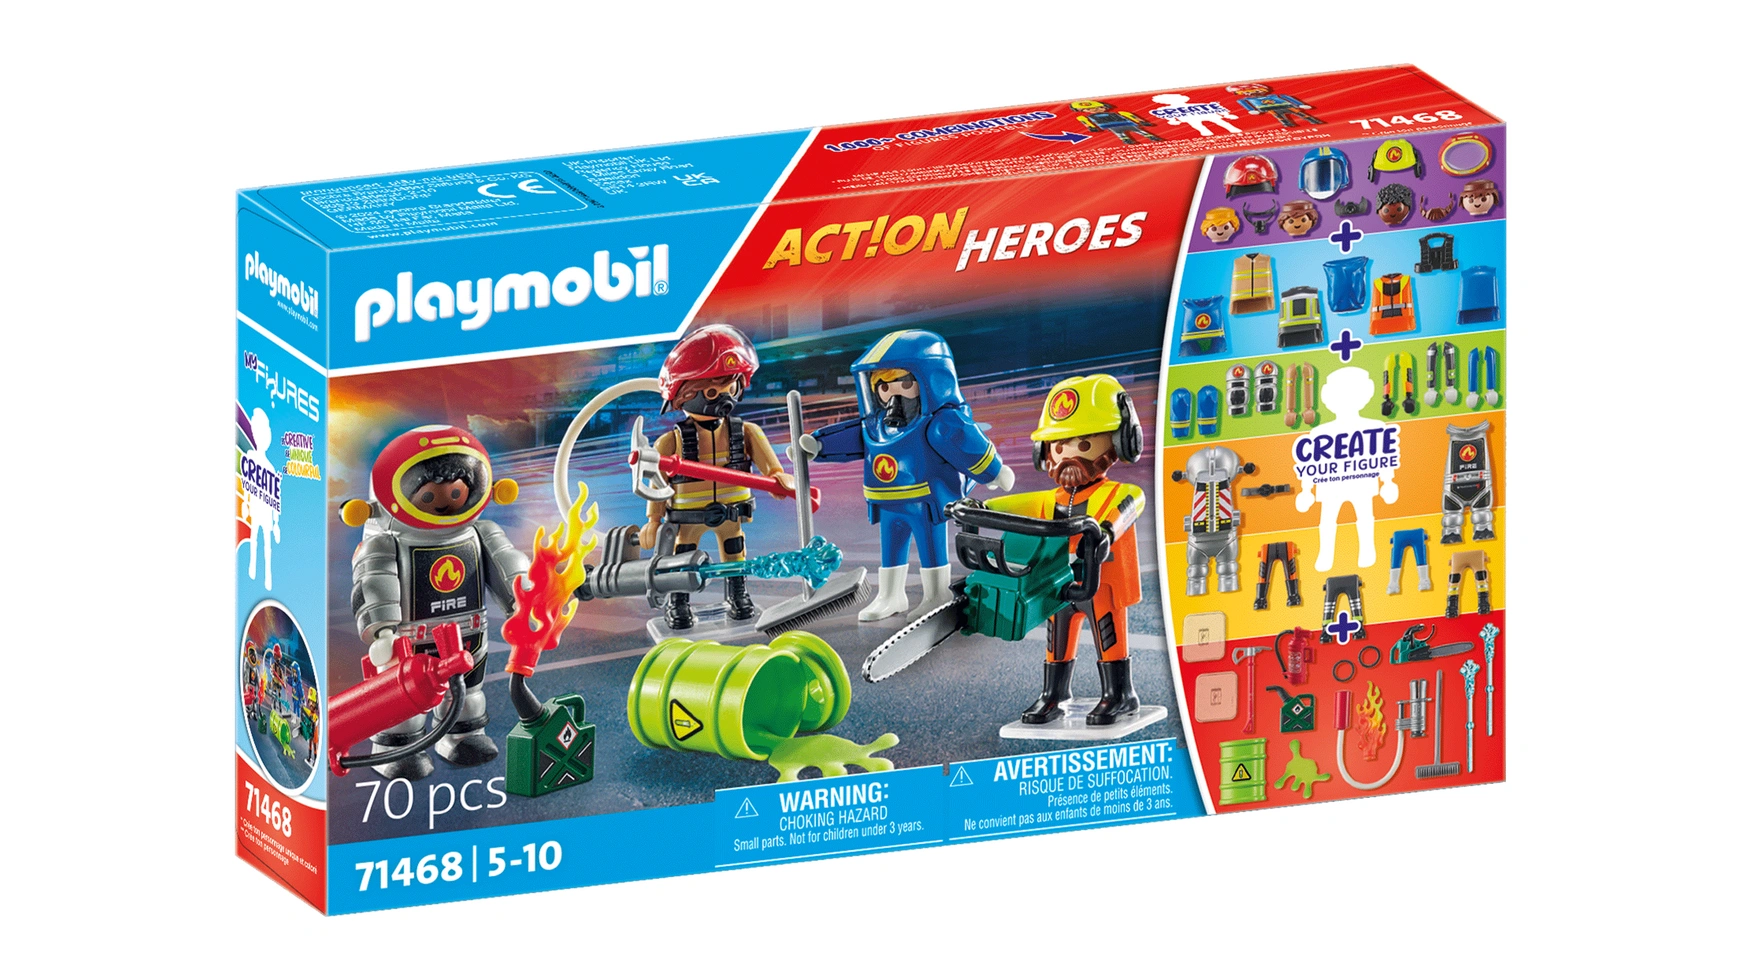 playmobil city action 9464 пожарная служба пожарная машина 138 дет Action heroes мои фигурки пожарная служба Playmobil